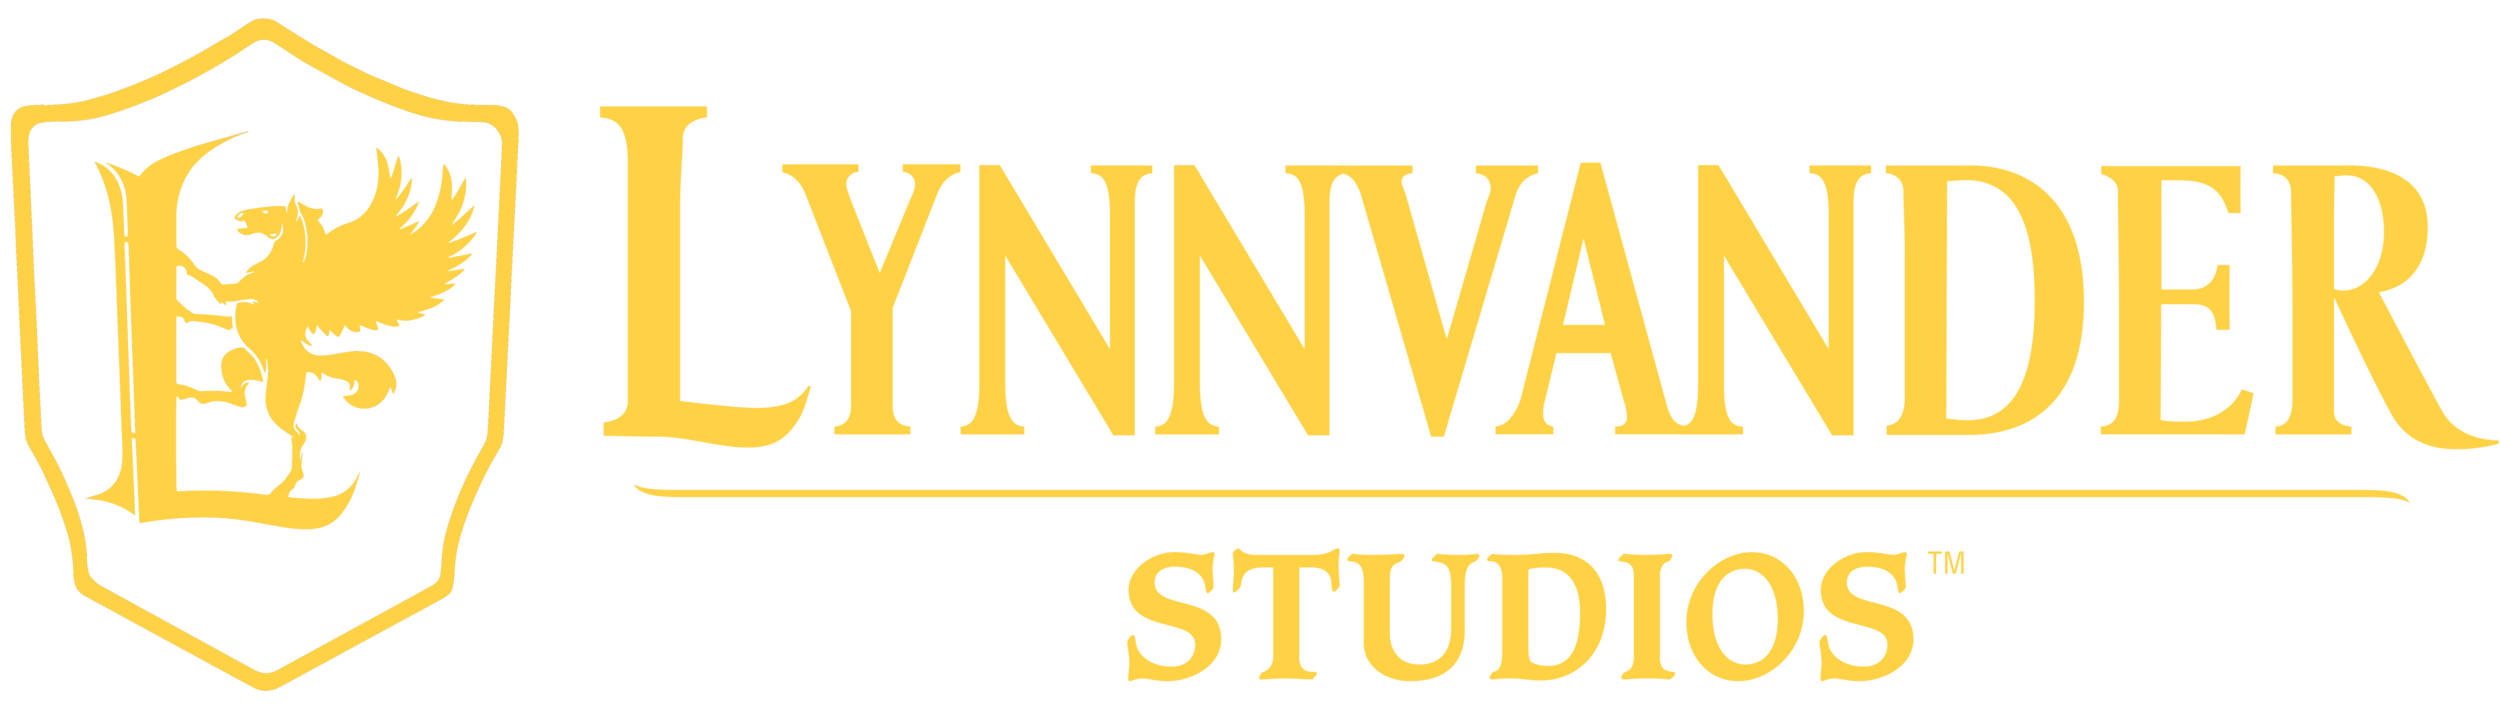 Lynnvander Studios